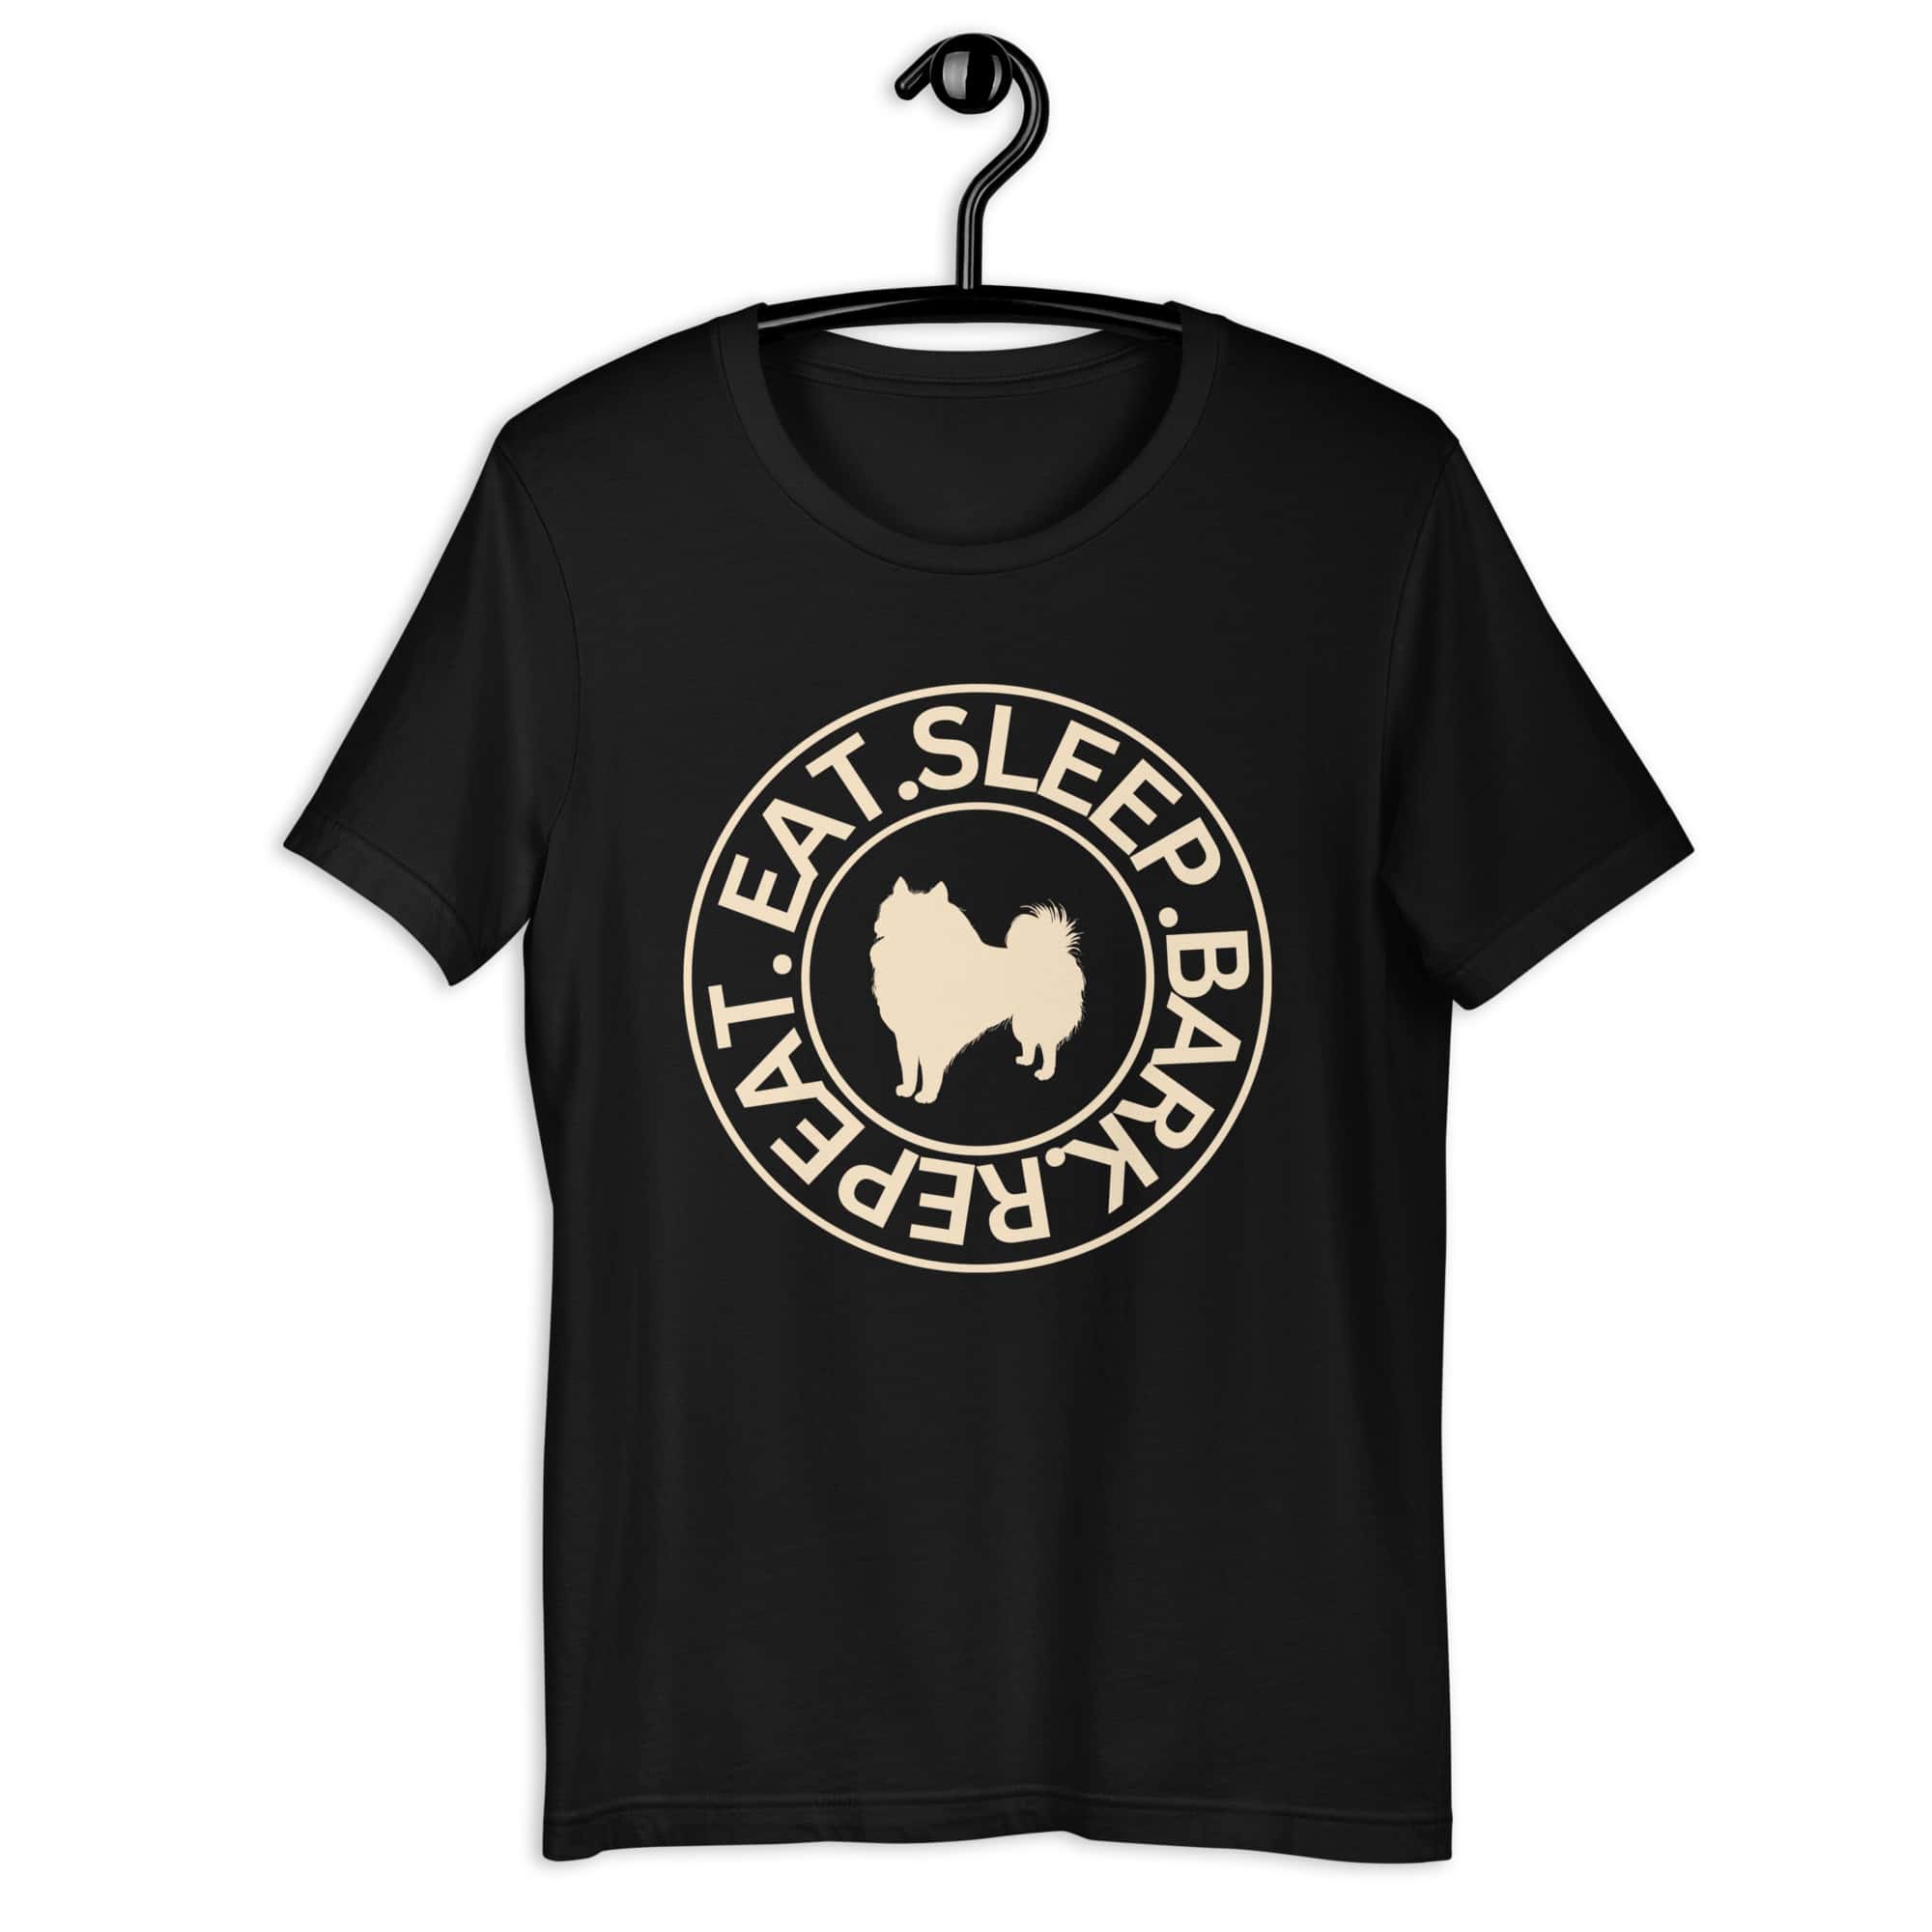 Eat Sleep Bark Repeat Poodle Unisex T-Shirt. Black